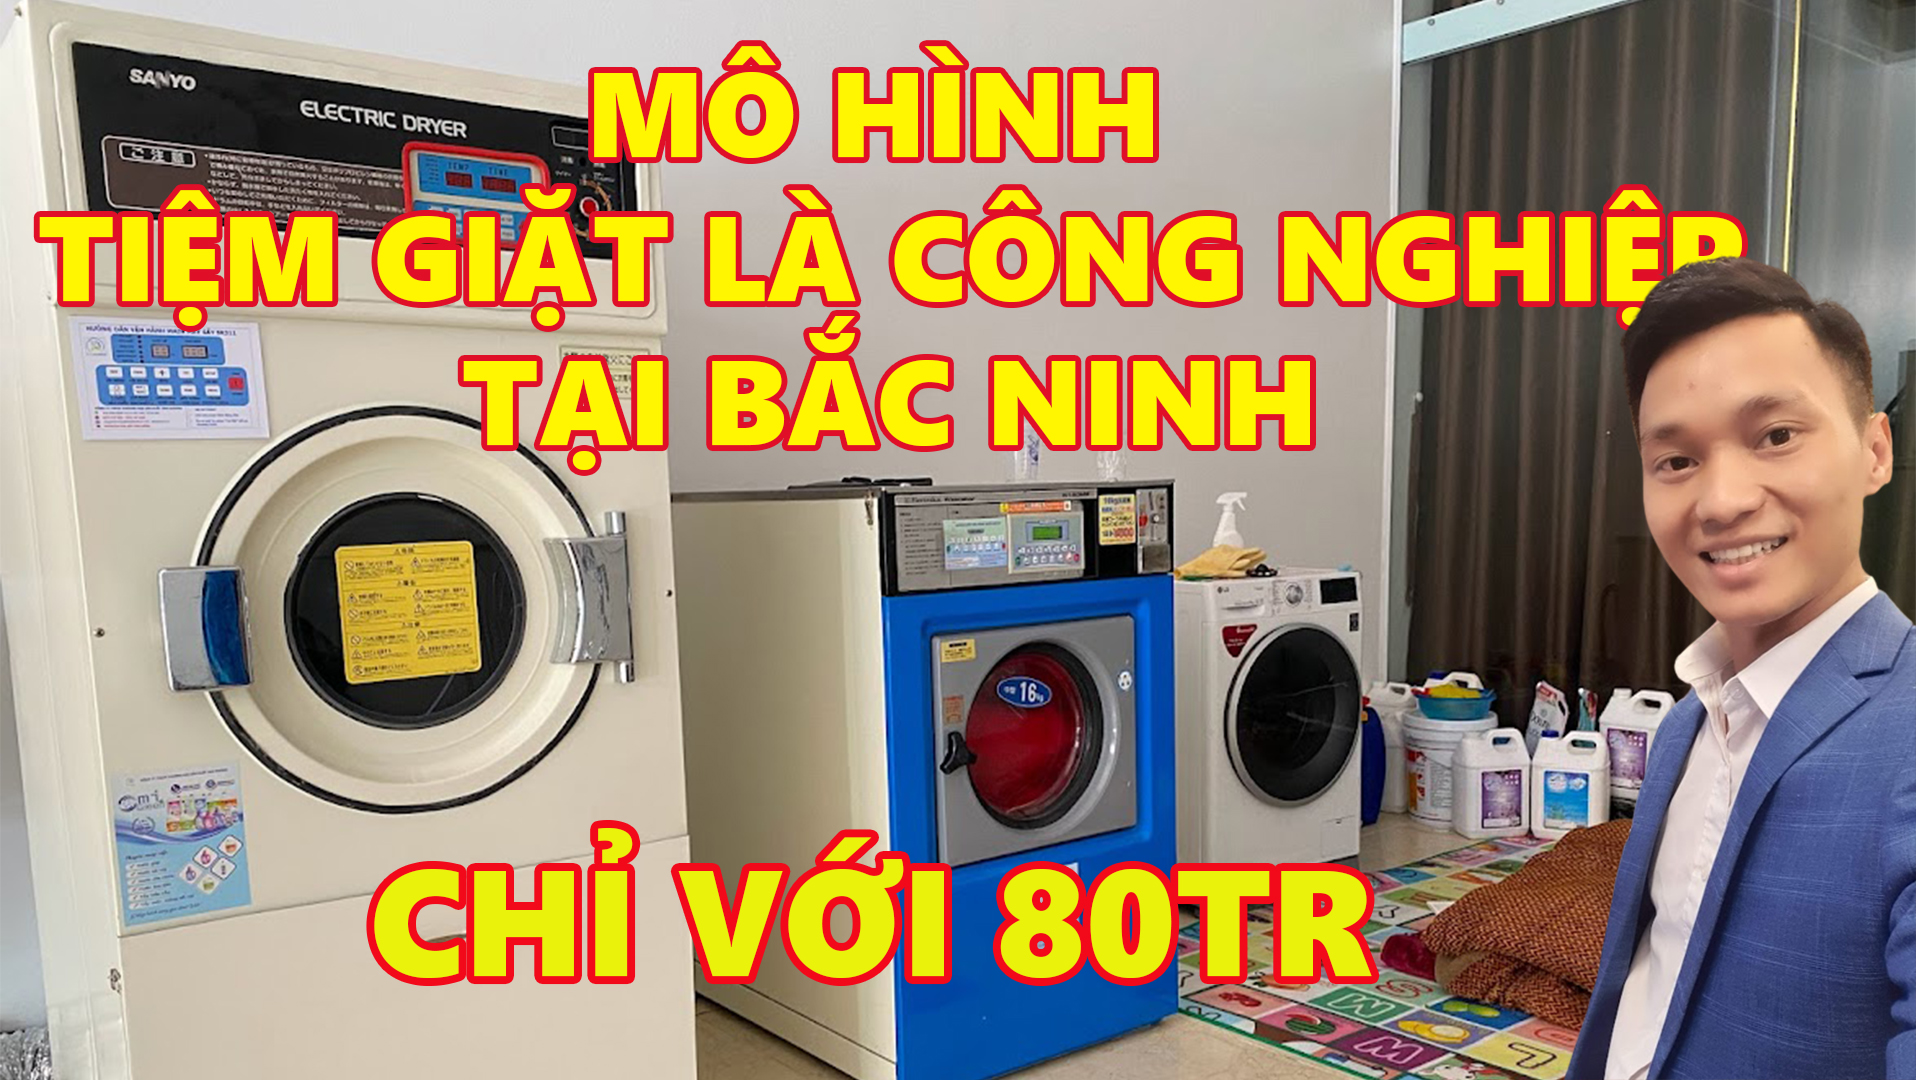 Cung cấp máy giặt công nghiệp cũ nhật bãi giá rẻ nhất tại Bắc Ninh